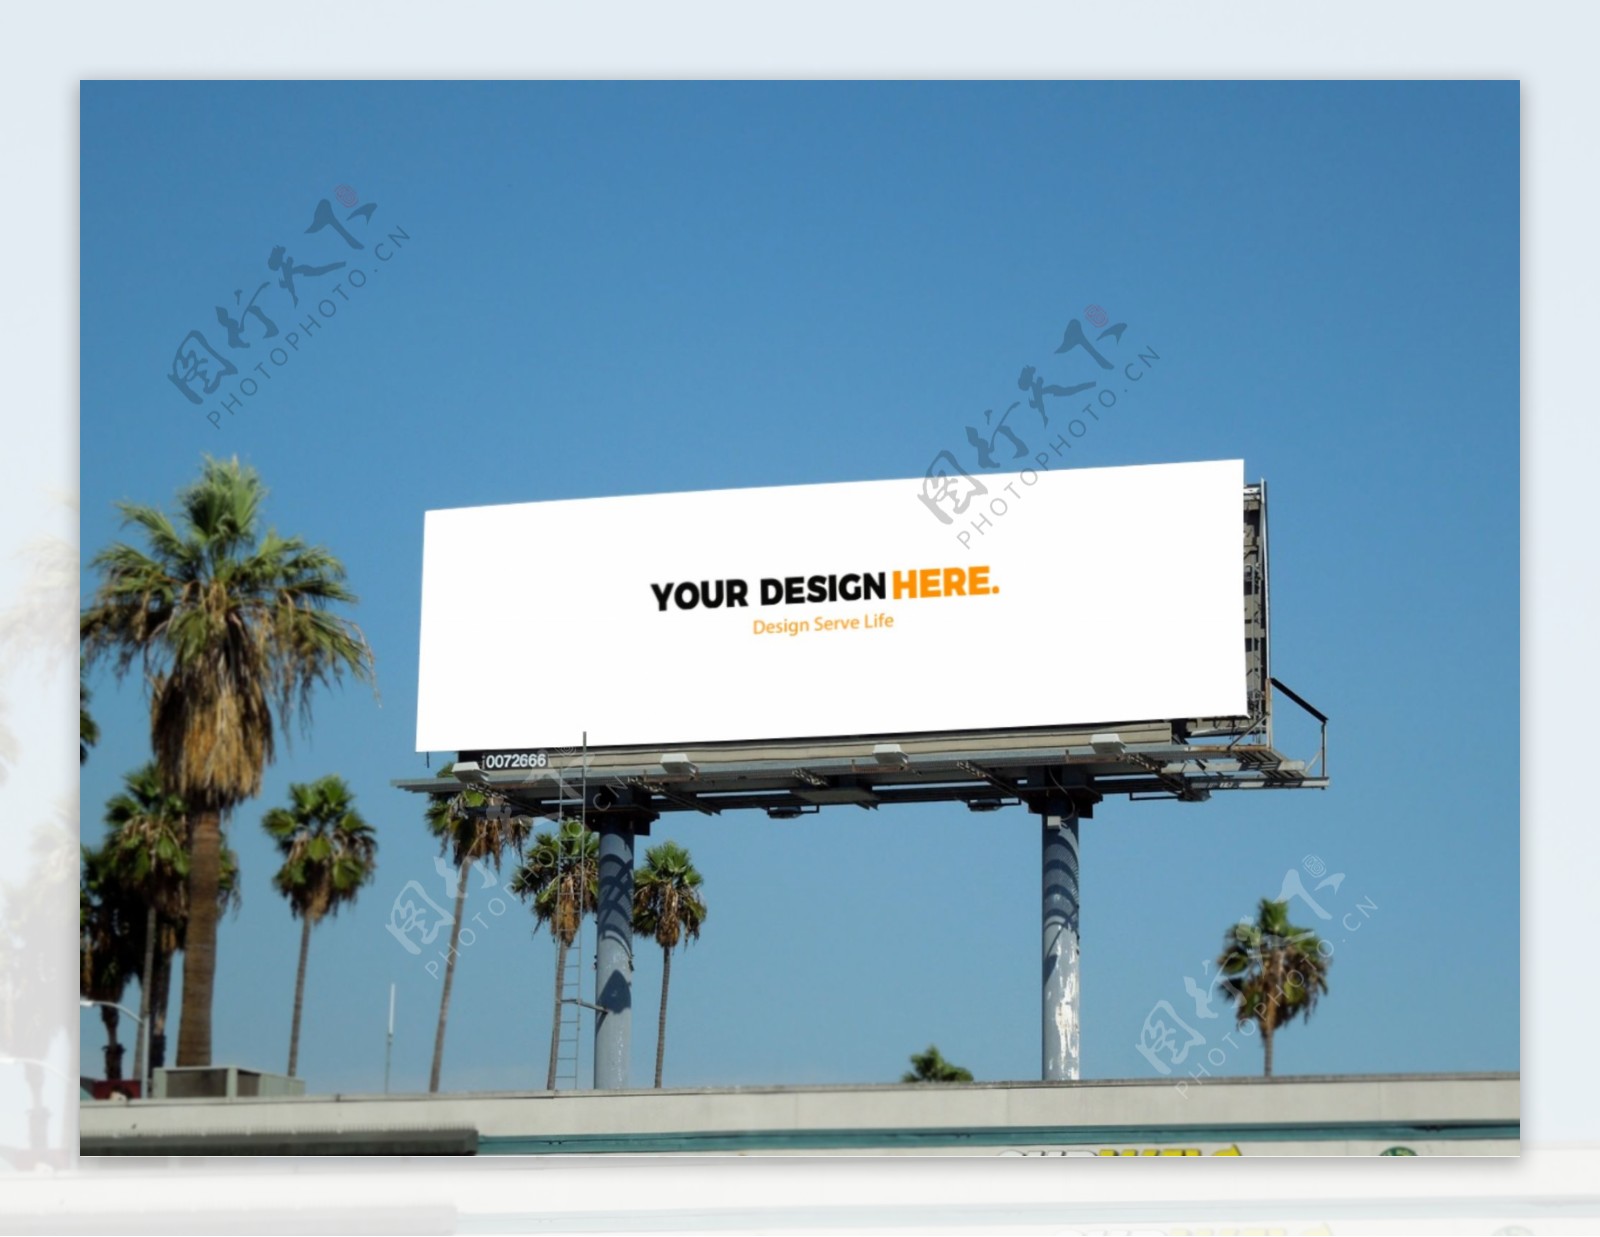 室外大型广告牌海报设计贴图样机